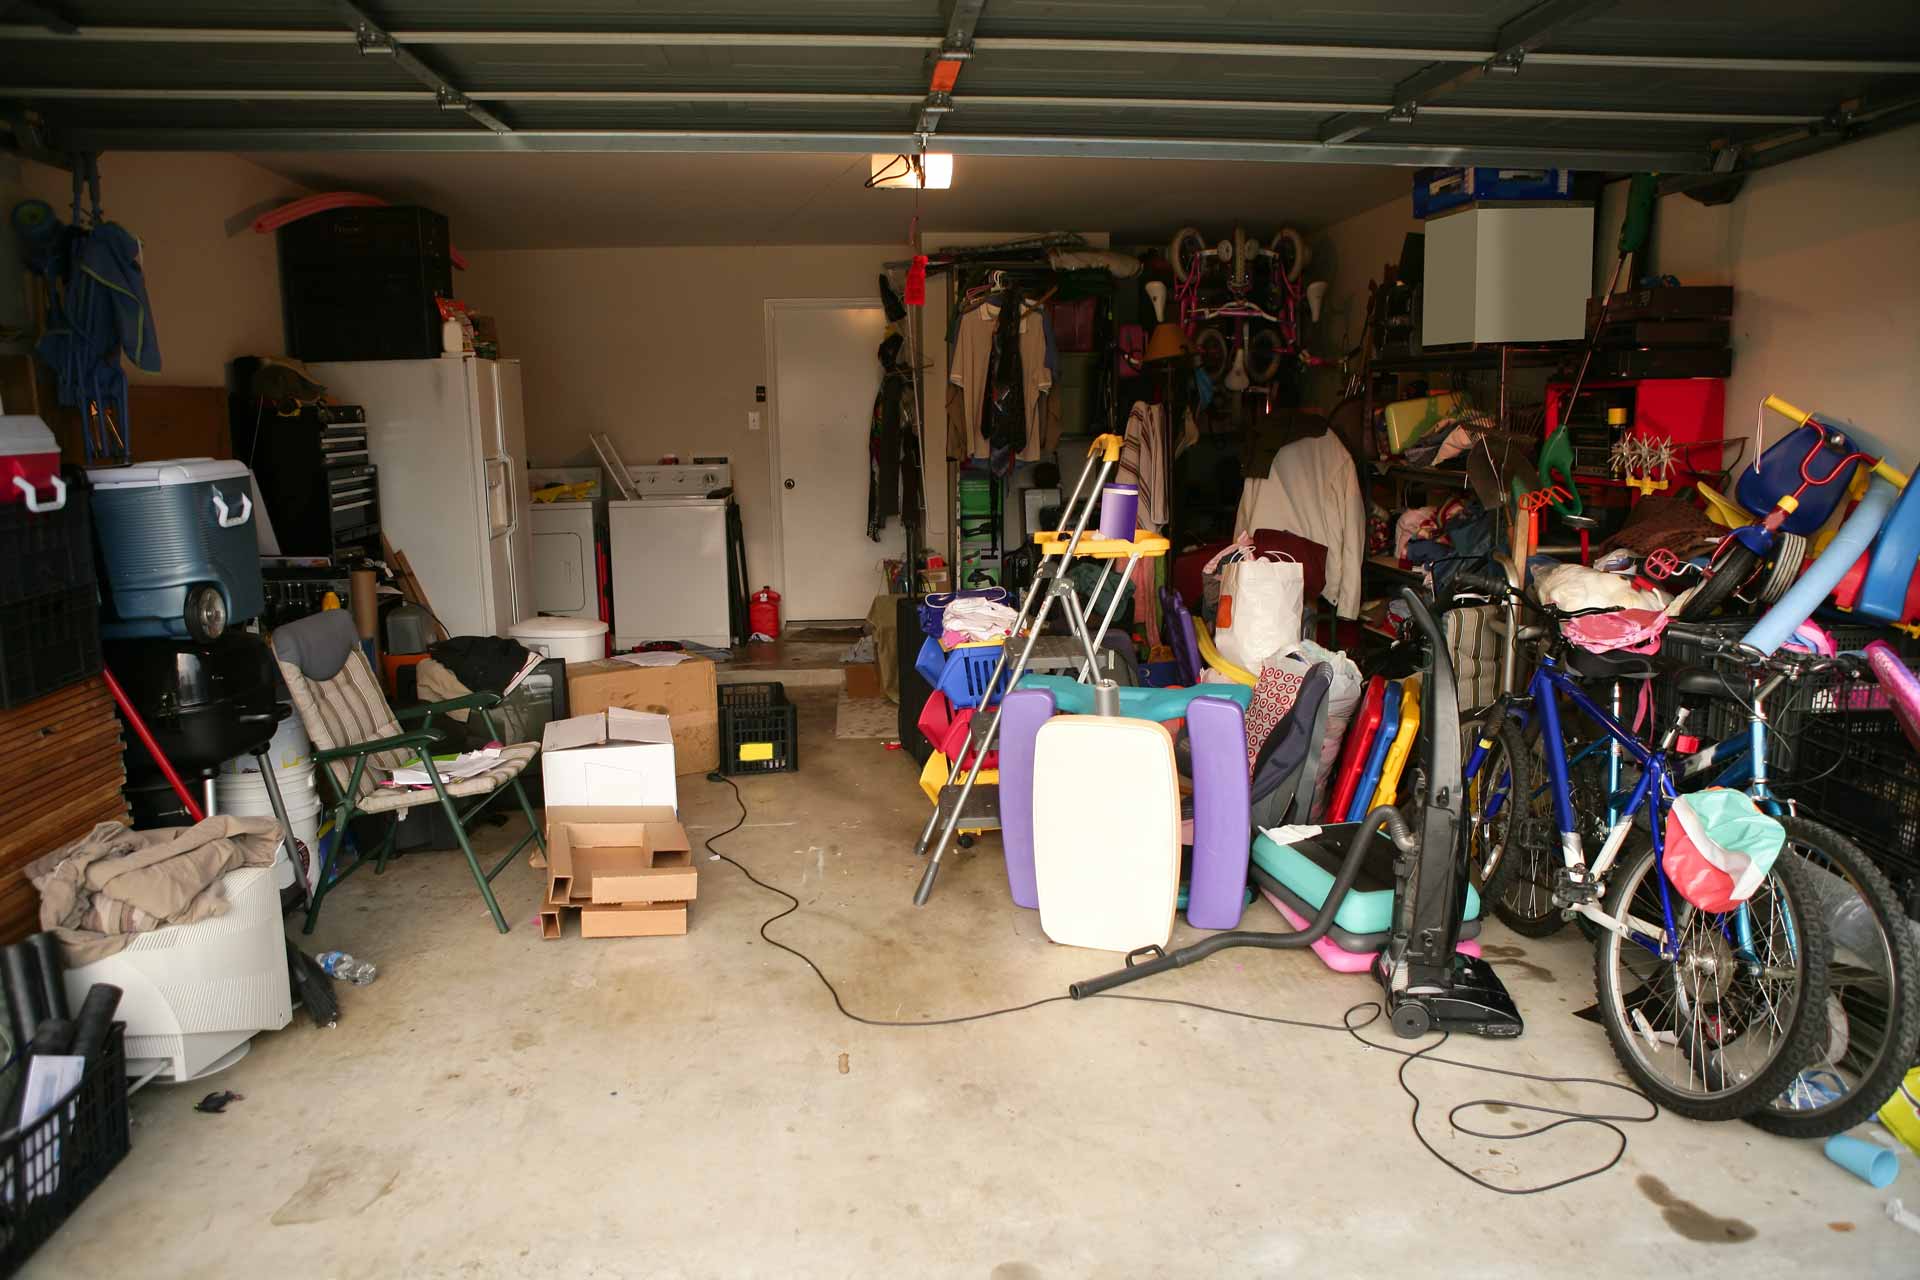 Garage full of old junk